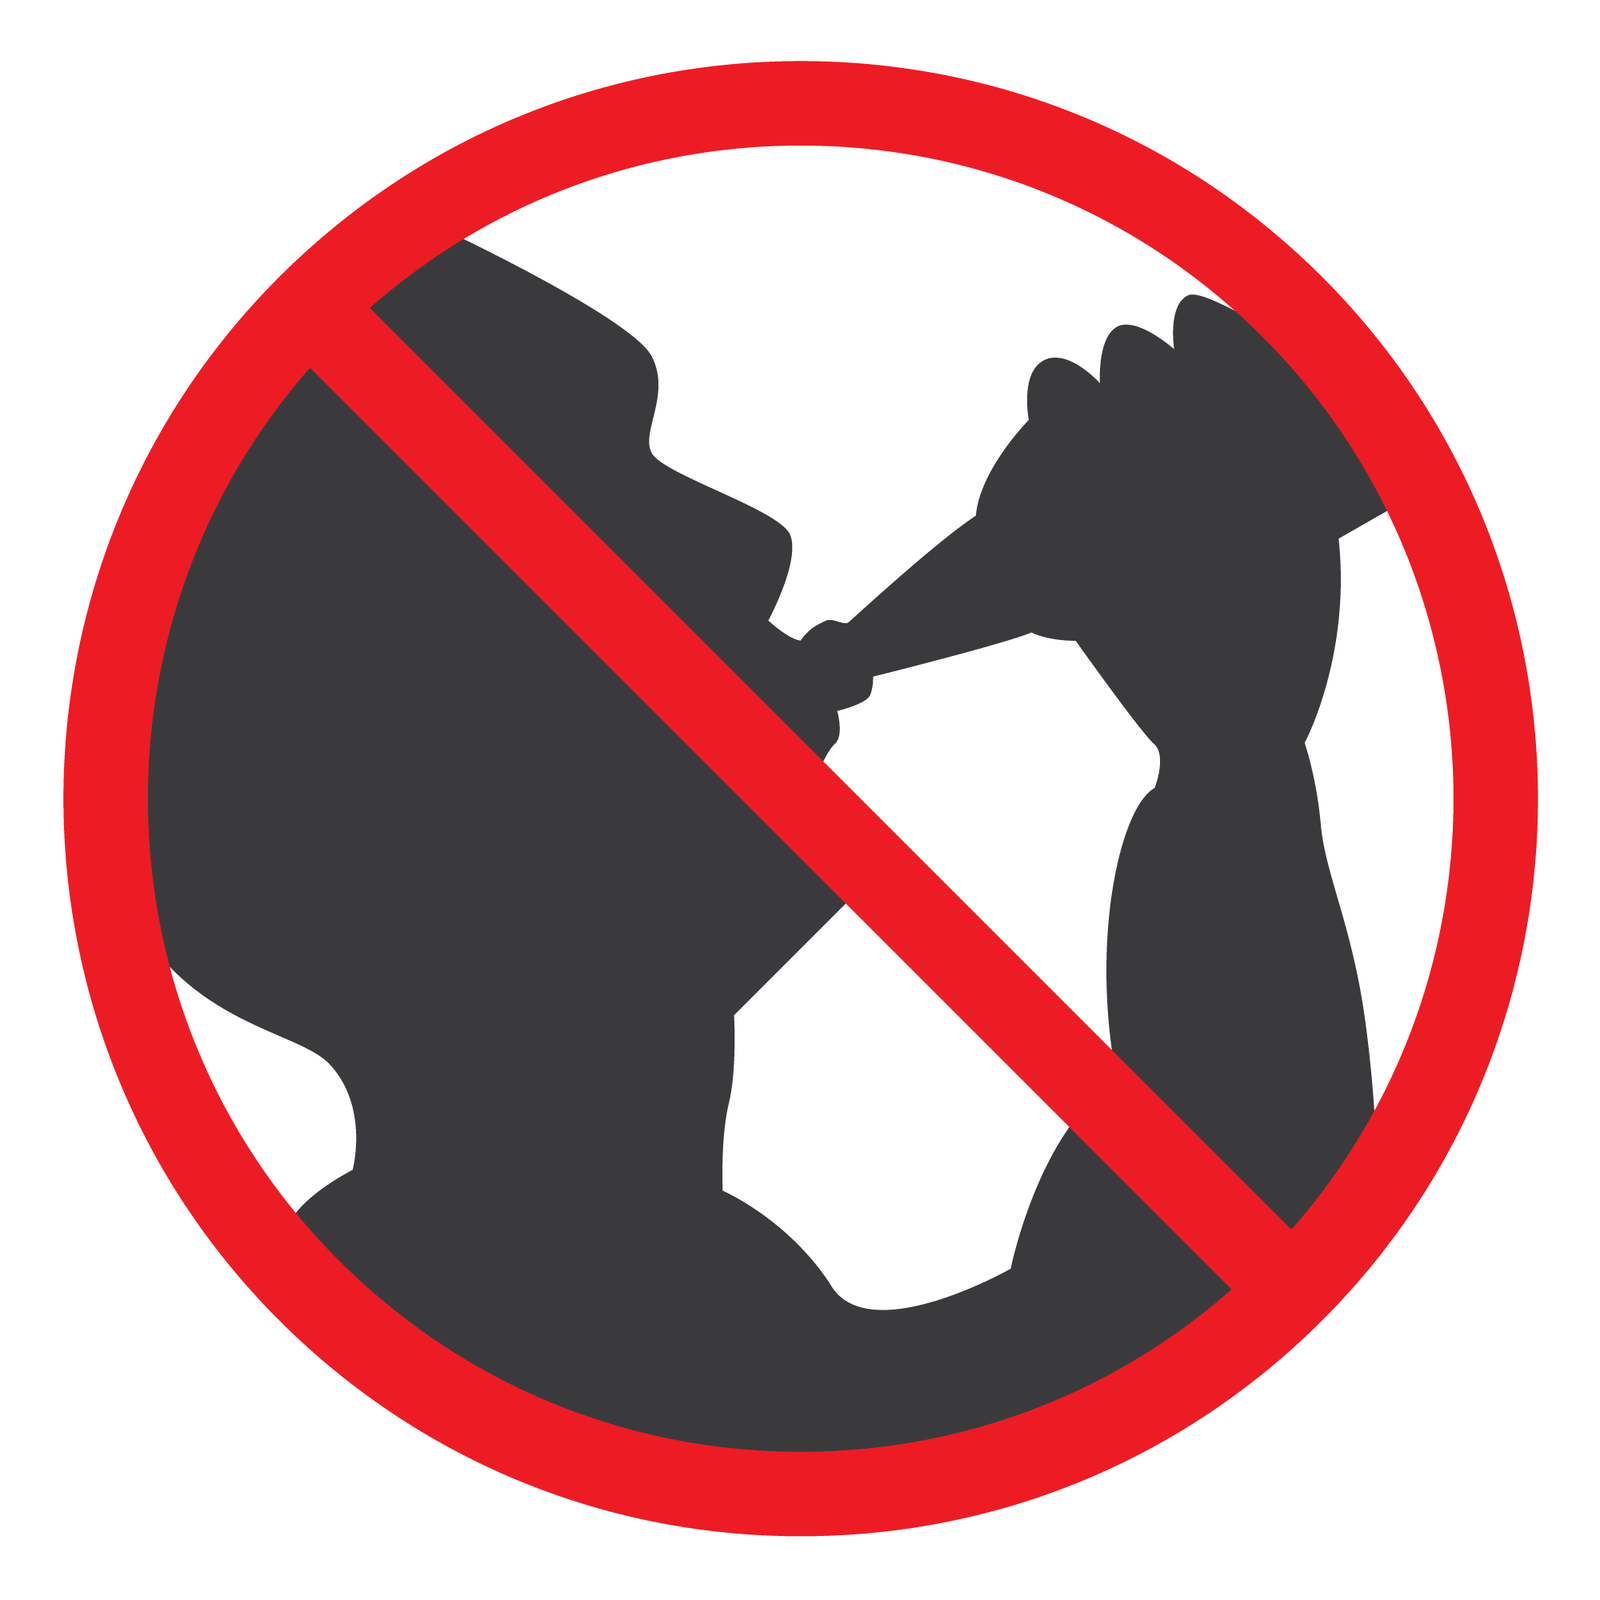 Drugi piktogram przedstawia czarny zarys osoby pijącej z butelki. Osoby skierowana w prawo. Ręka wzniesiona w górę przytrzymuje butelkę skierowaną do ust.